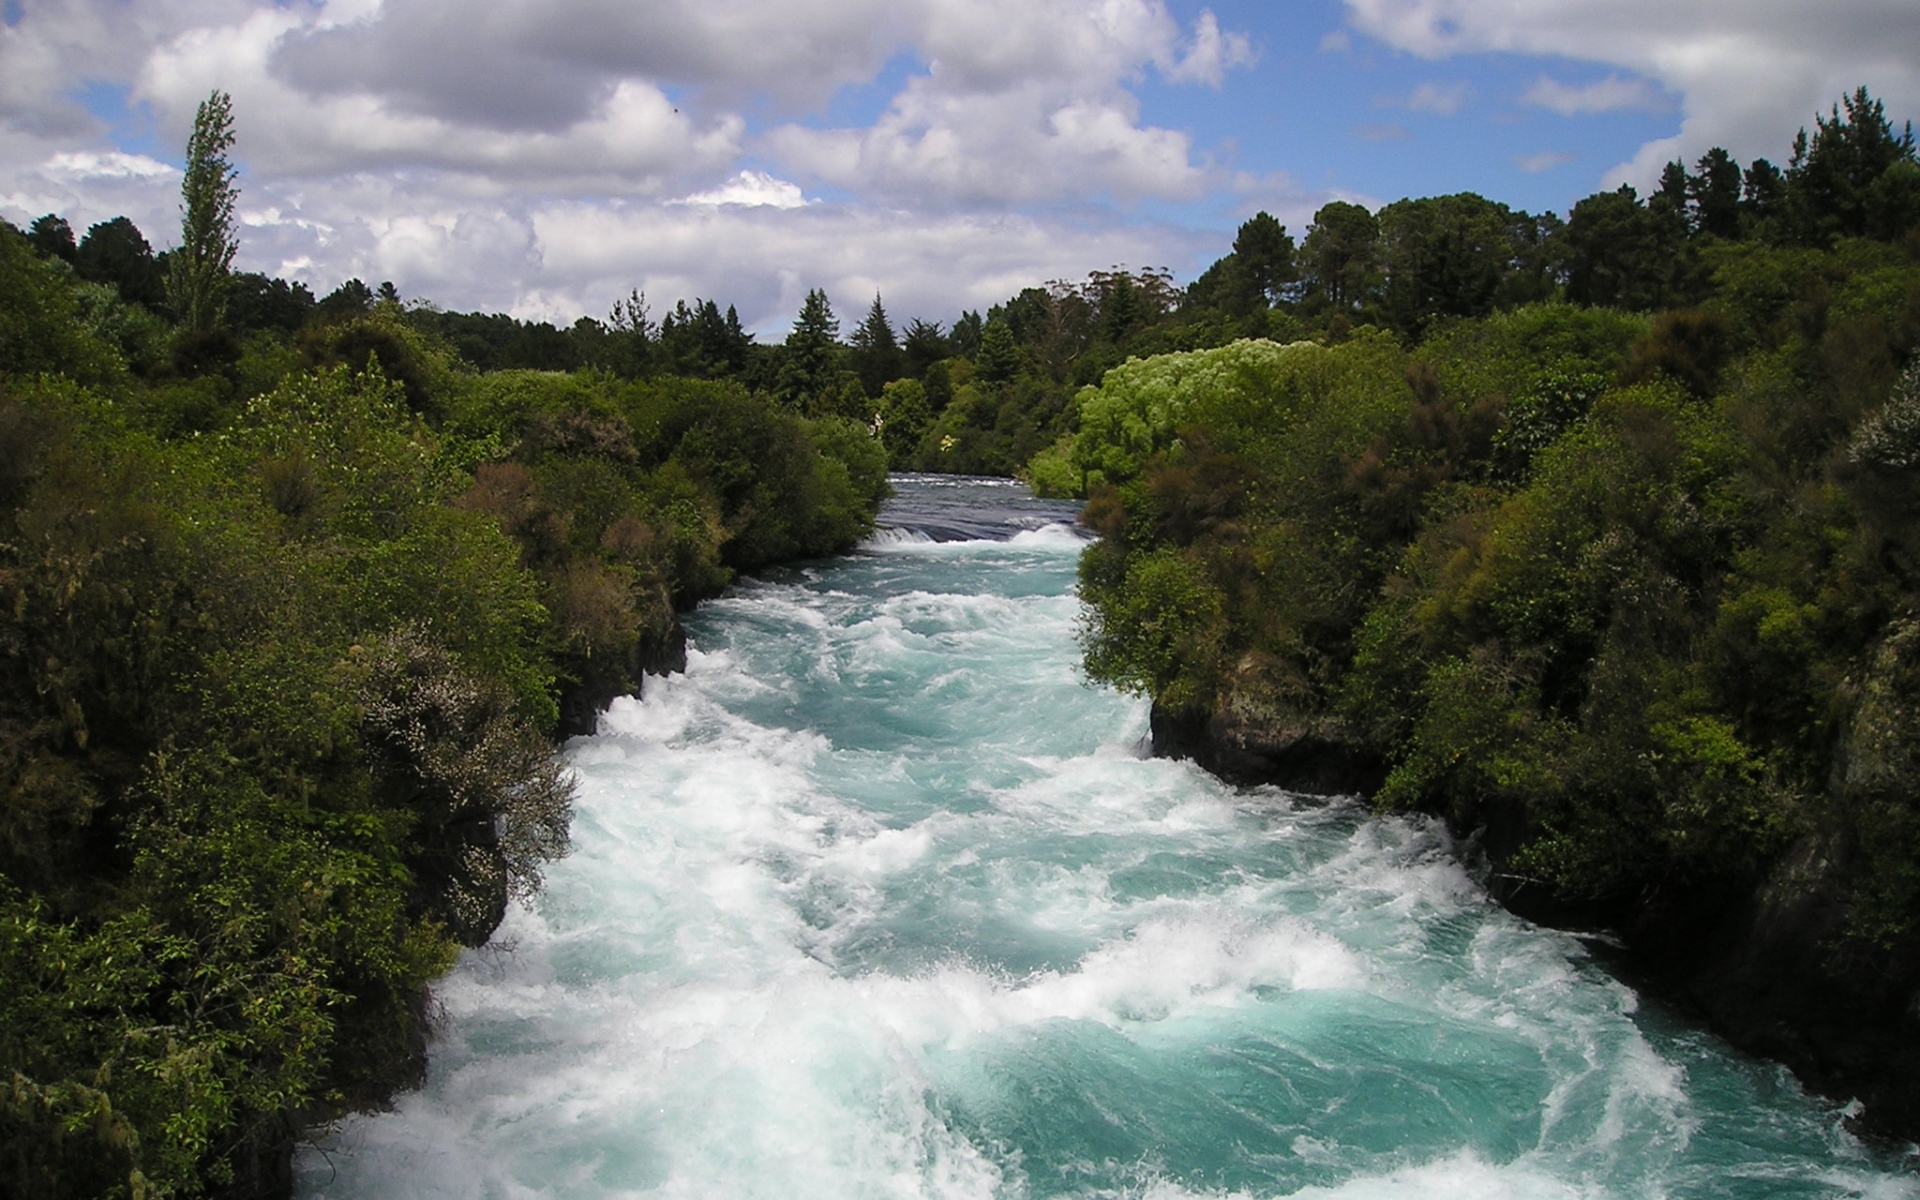 Картинки Новая Зеландия, река, поток, деревья фото и обои на рабочий стол